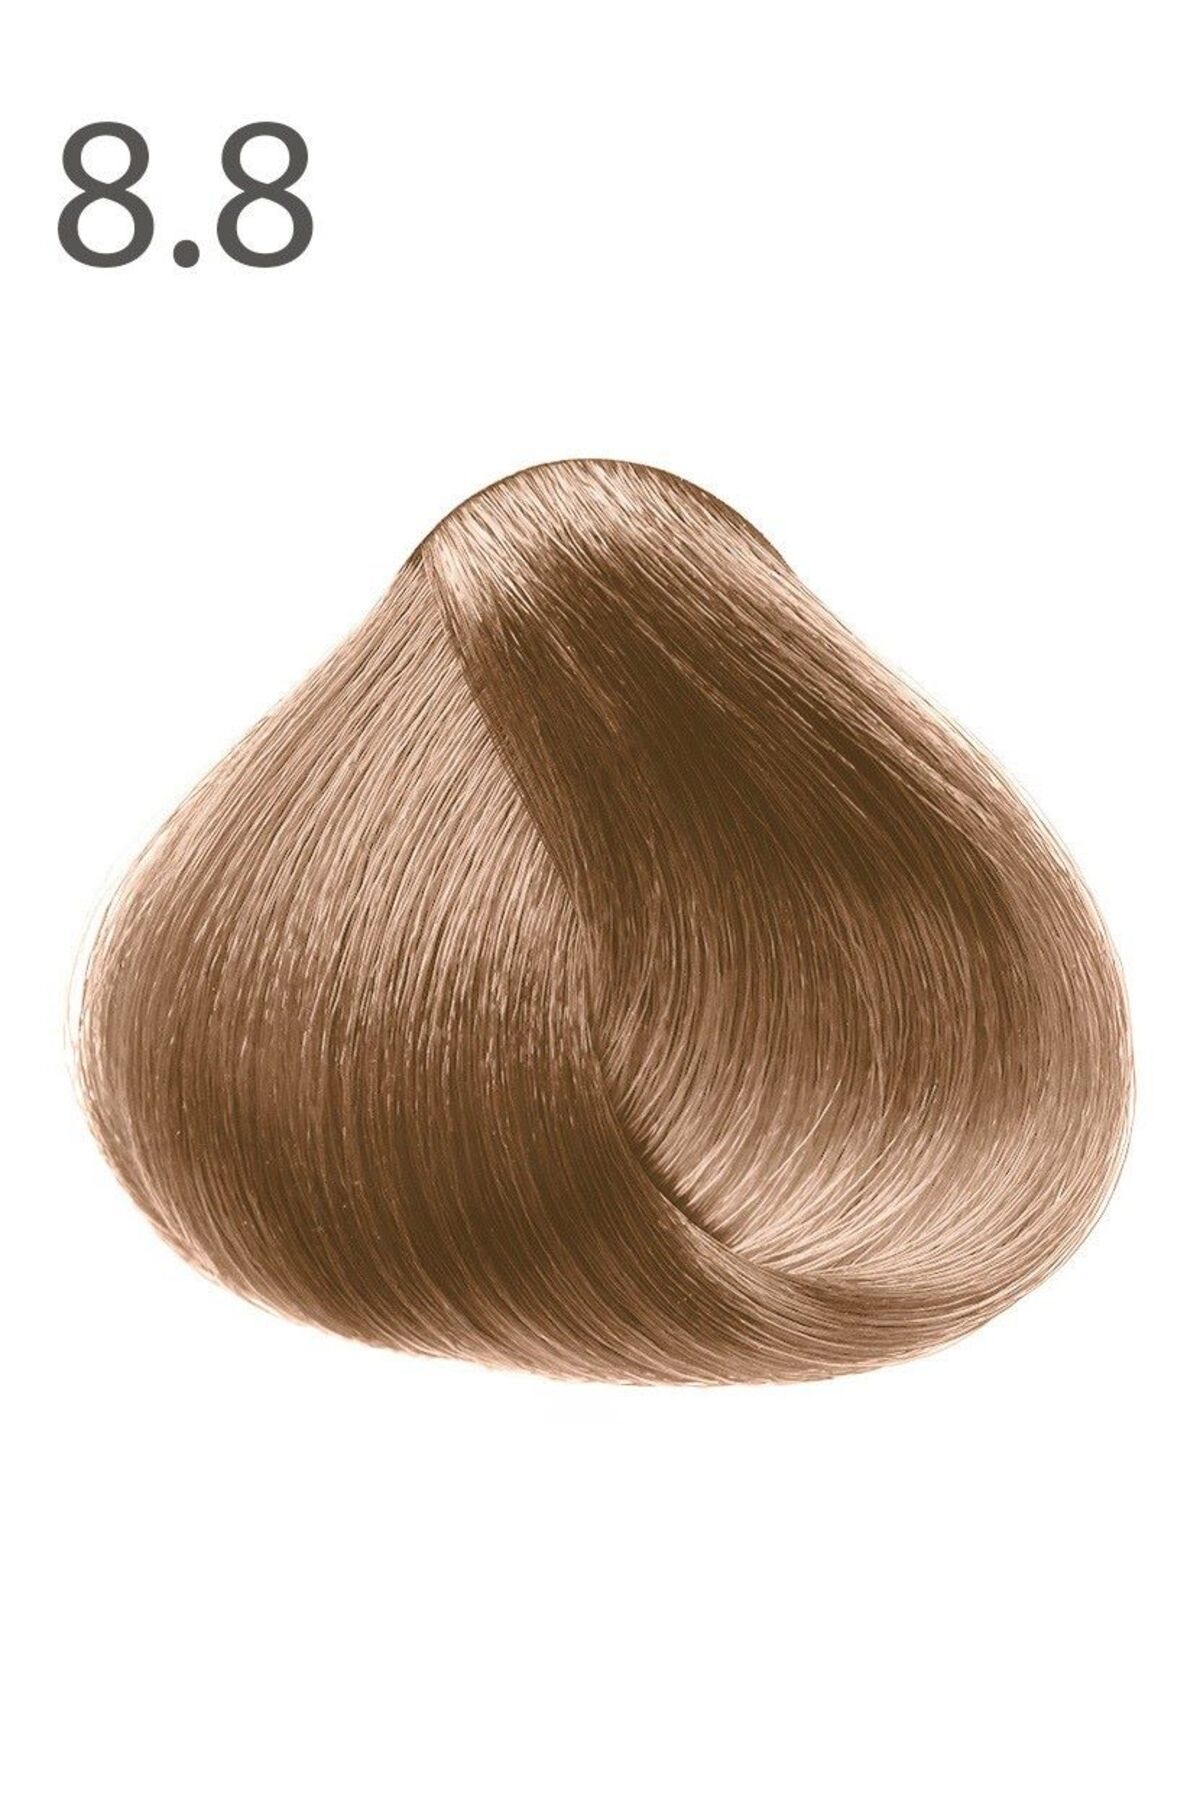 Faberlic Kalıcı krem saç boyası SALONCARE serisinin ipek rengi tonu Bej sarı 8.8/8278